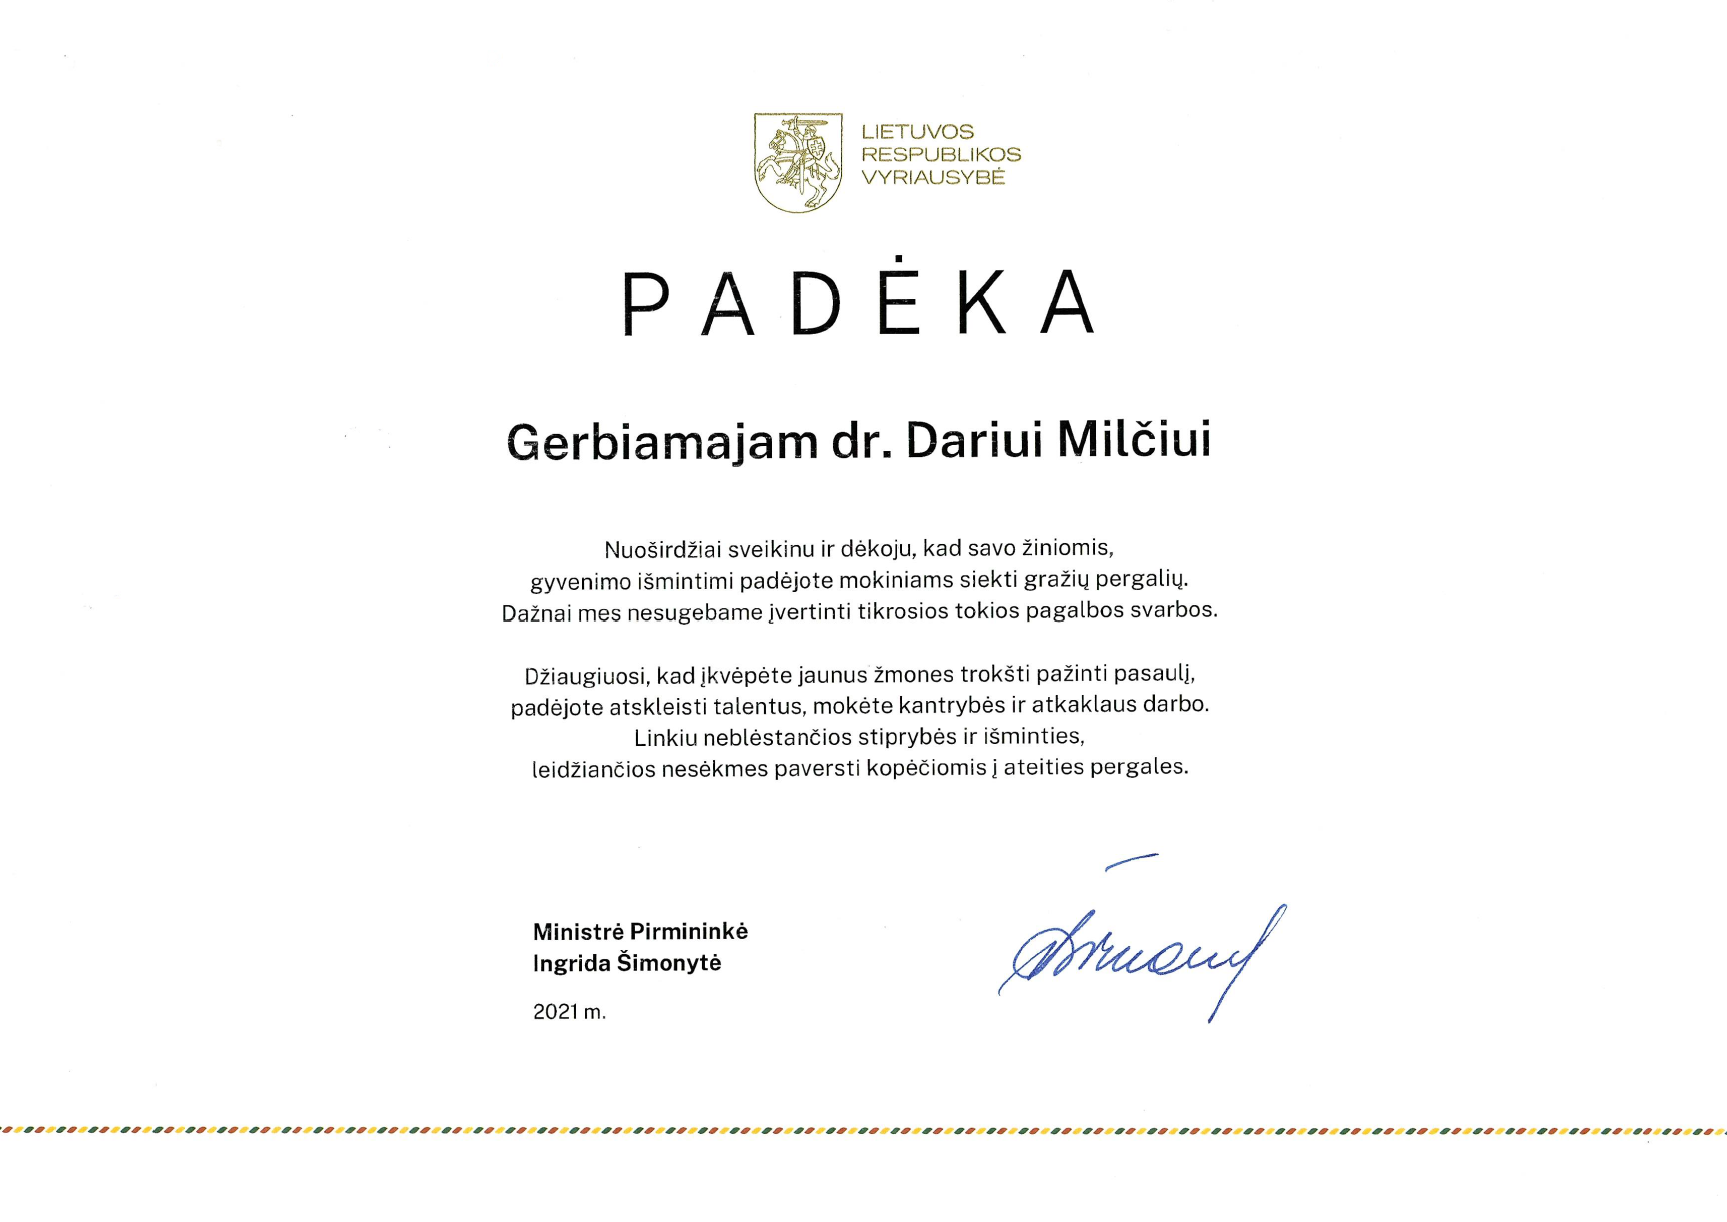 Lietuvos Respublikos Vyriausybės padėkos raštas LEI mokslininkui Dariui Milčiui